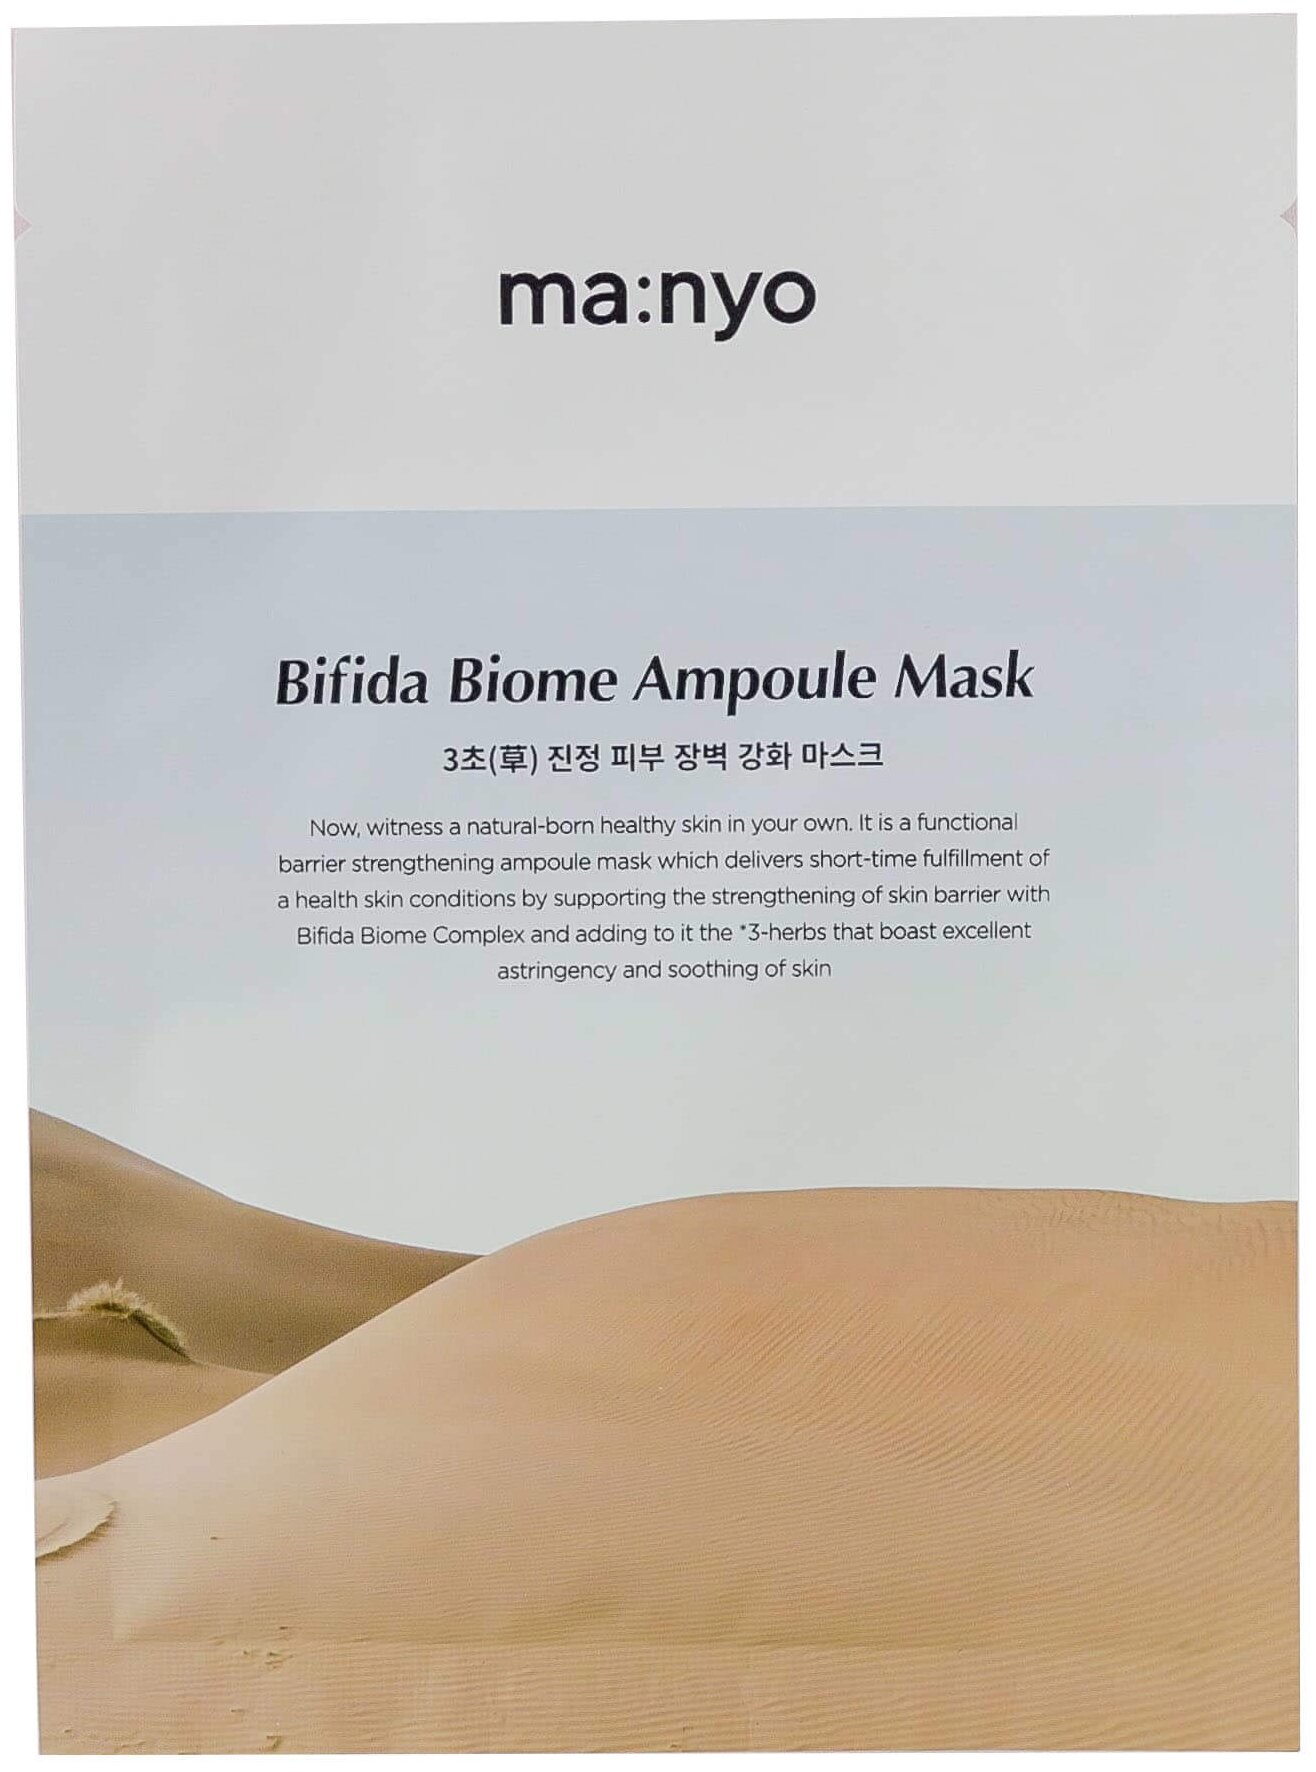 Manyo Factory тканевая маска с пробиотиками Manyo Bifida Biom Ampoule Mask